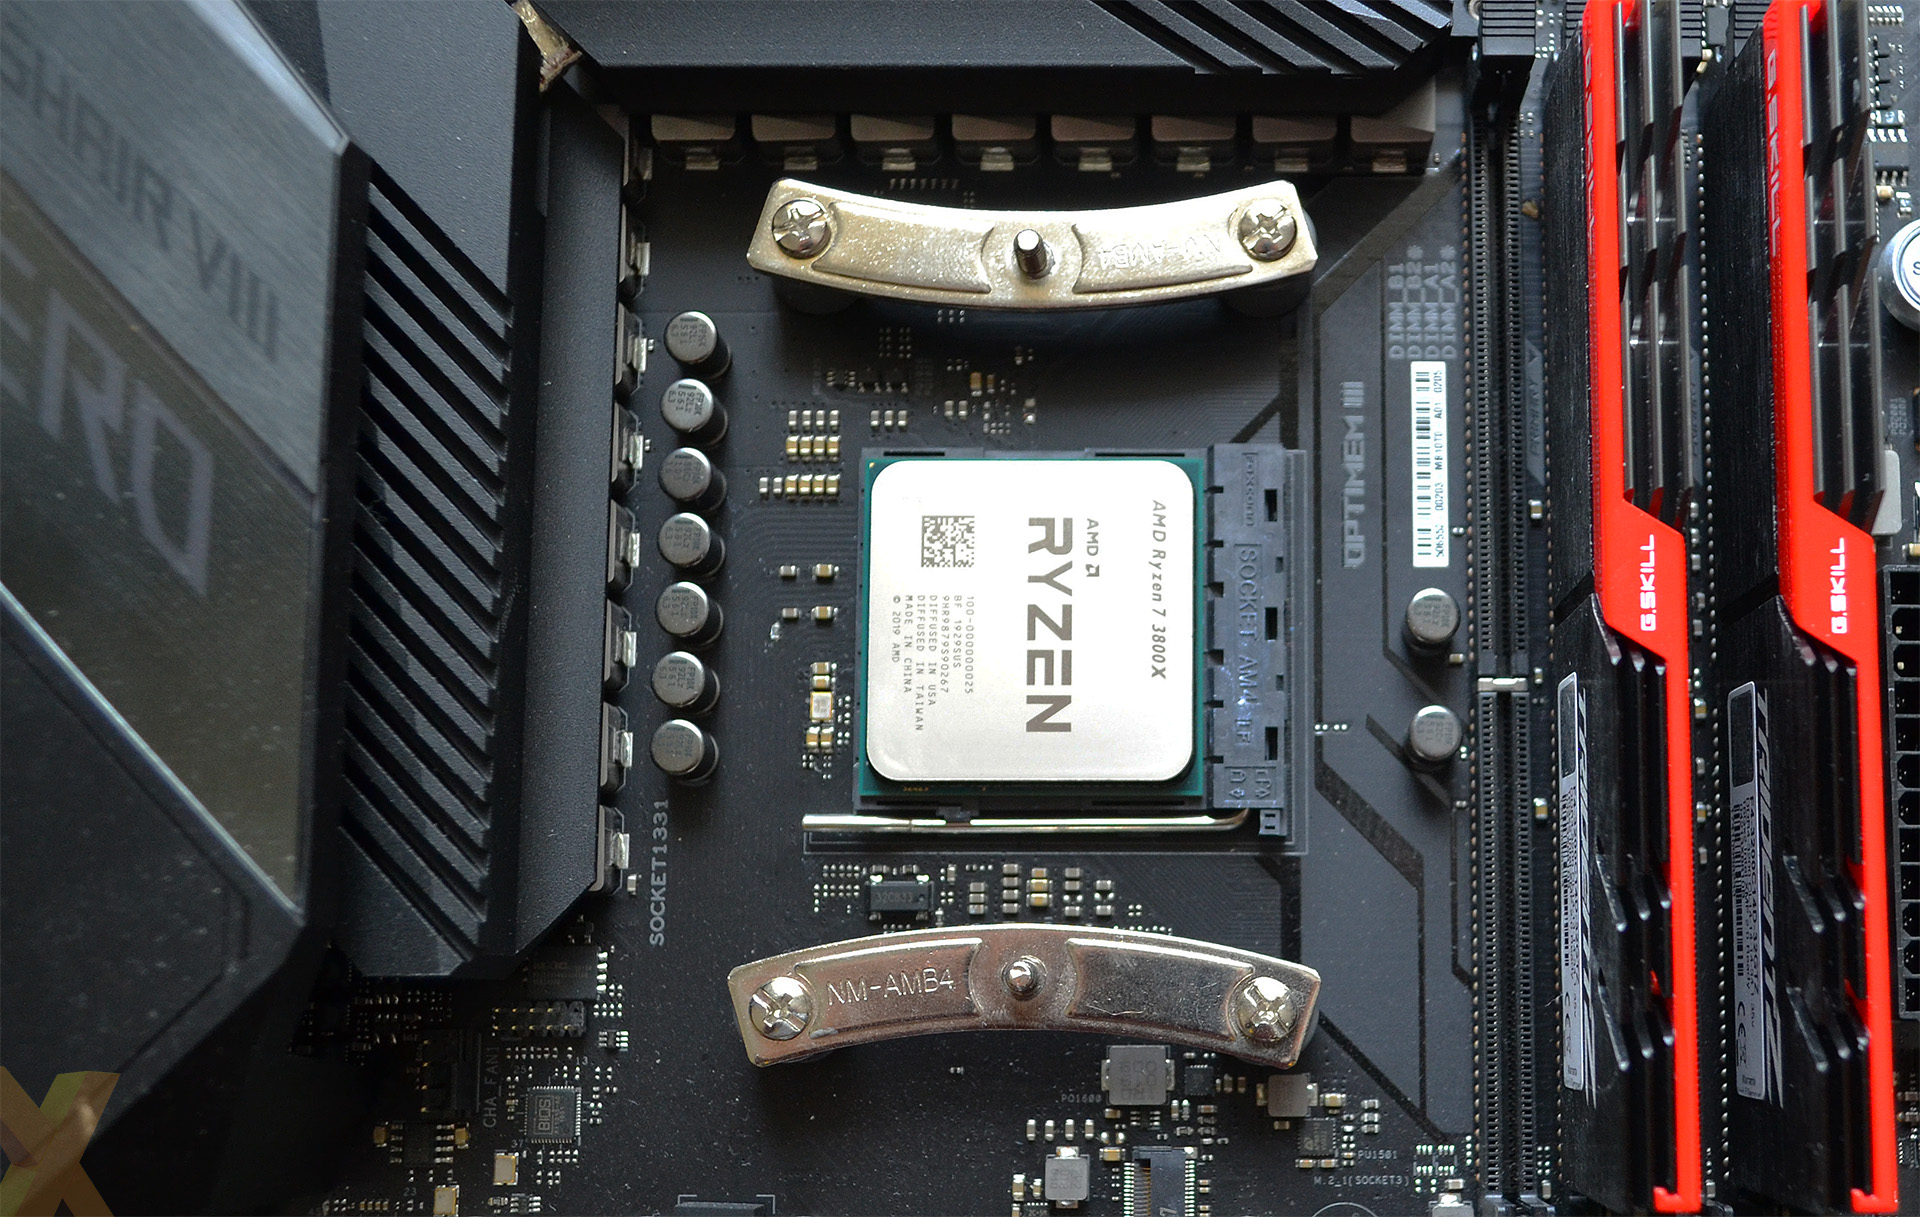 Review: AMD Ryzen 7 3800X - CPU - HEXUS.net